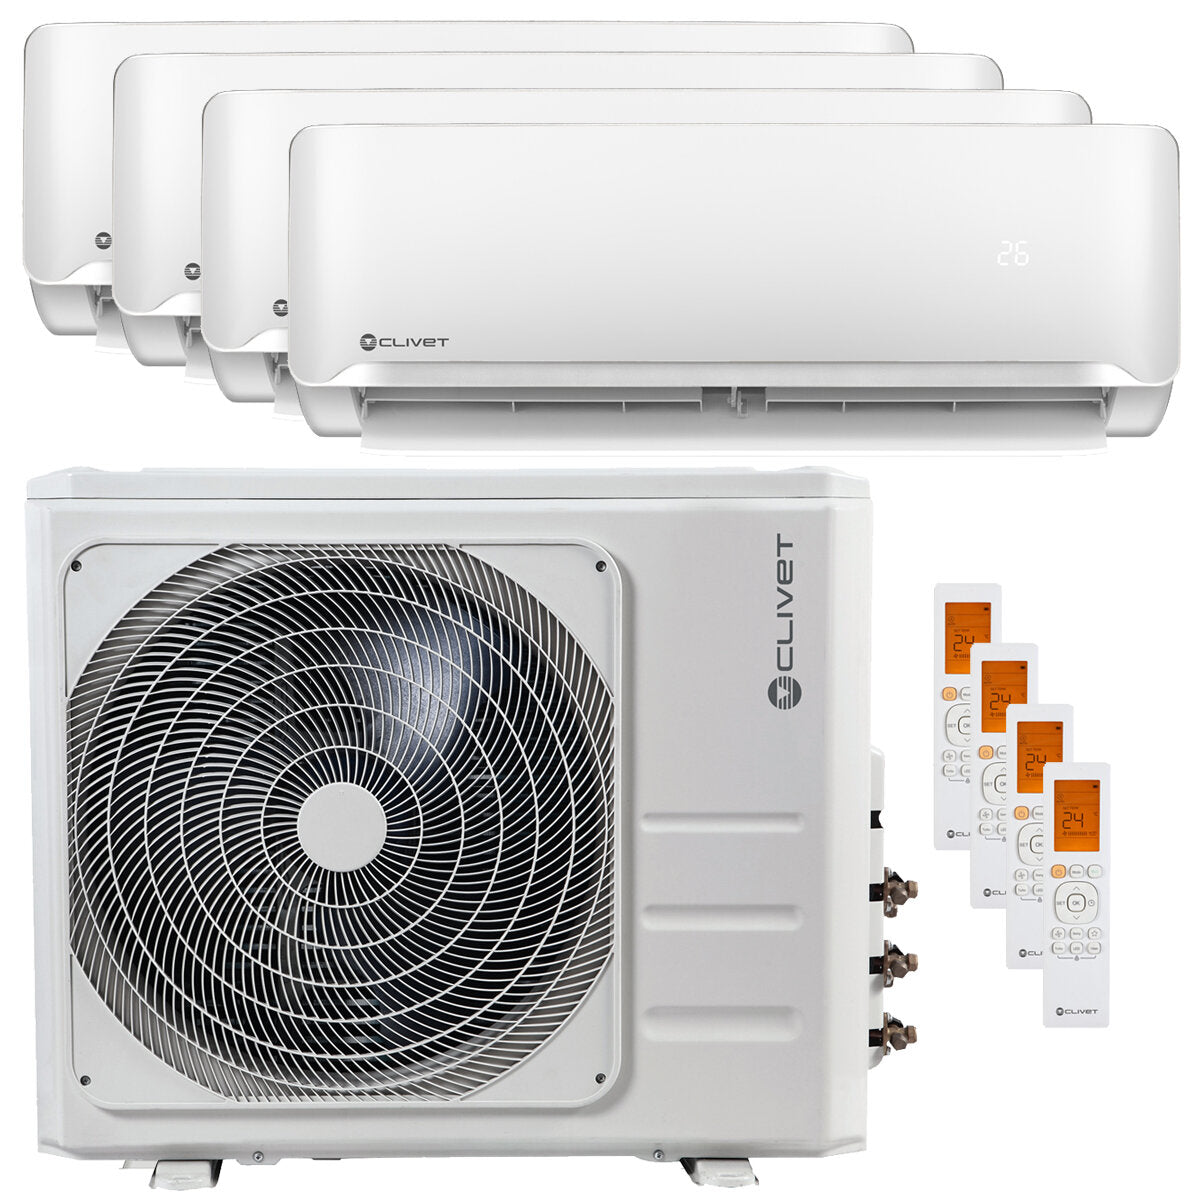 Clivet Essential air conditioner 2 quadri-split 9000+9000+9000+9000 BTU inverter A++ outdoor unit 8.2 kW